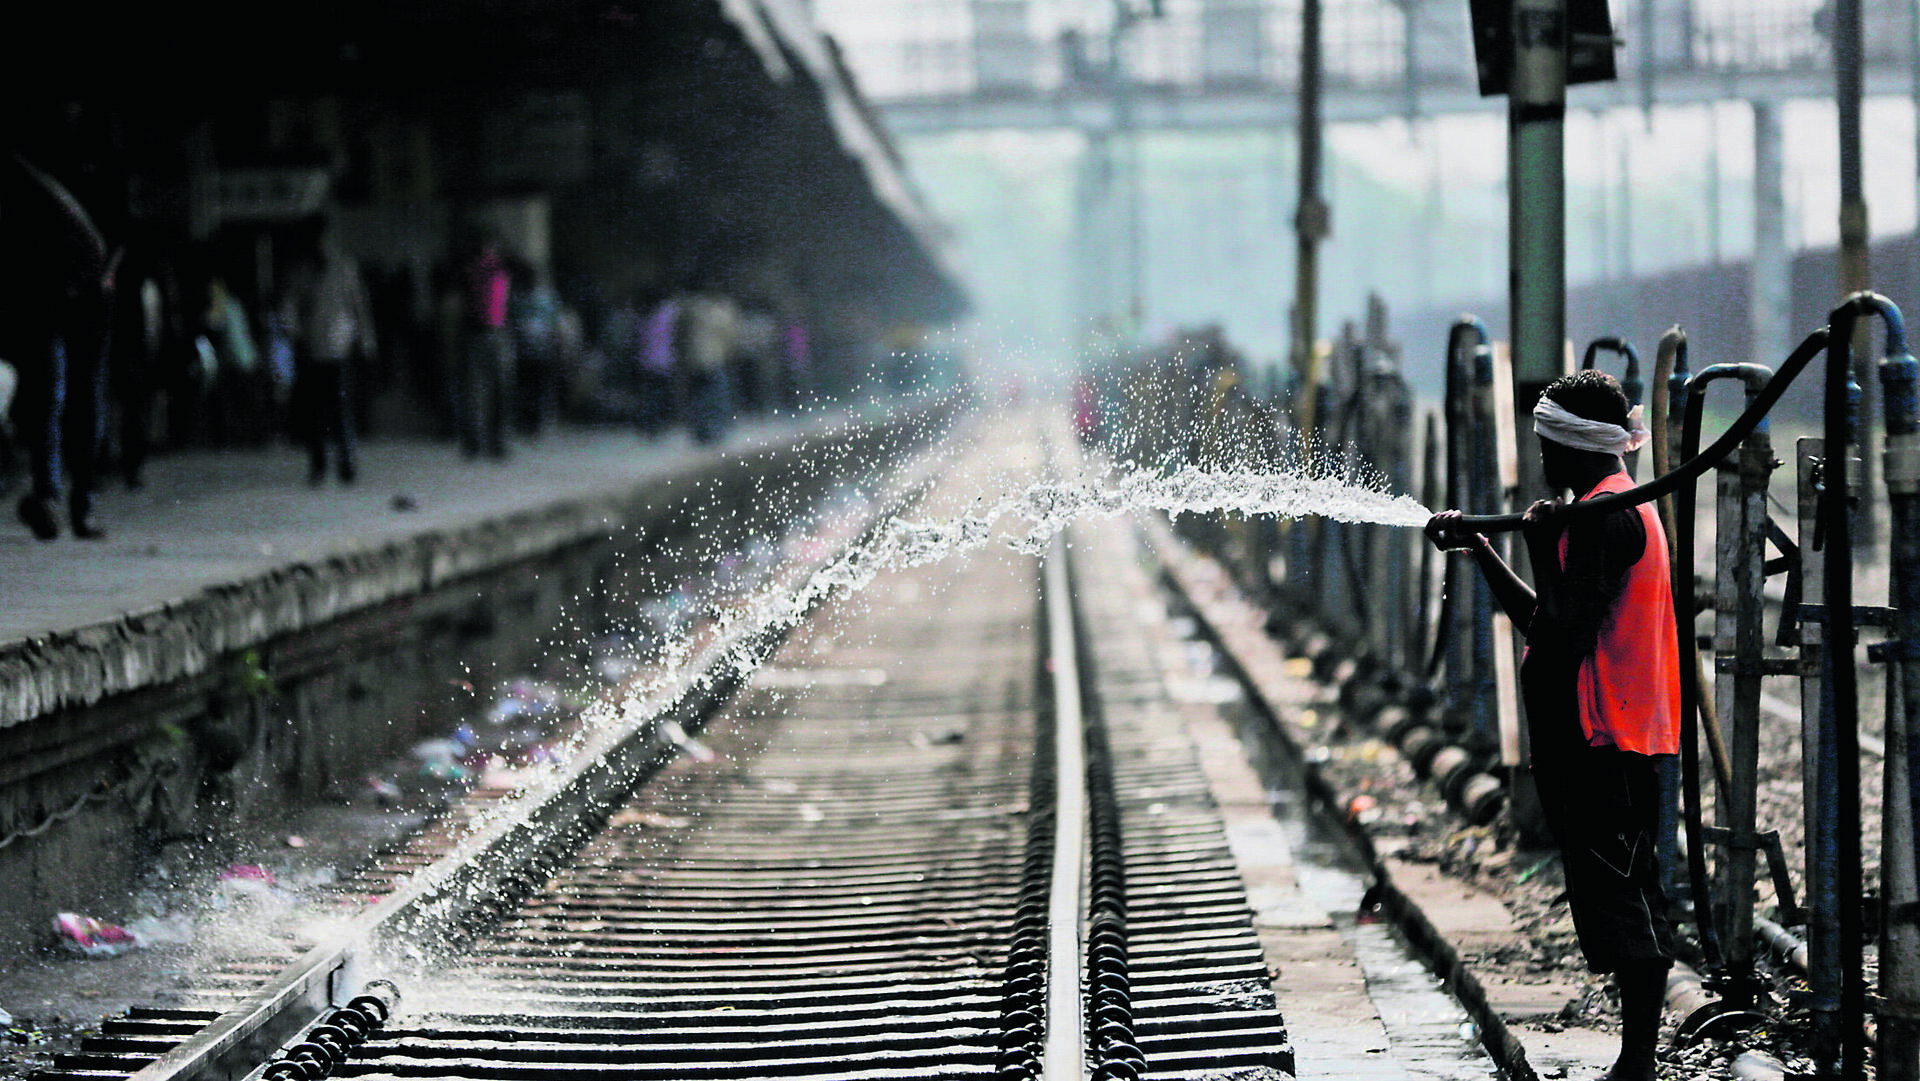 מקררים את הפסים בהודו. חברות הרכבות ברחבי העולם נערכות להתמודדות עם אתגרי האקלים